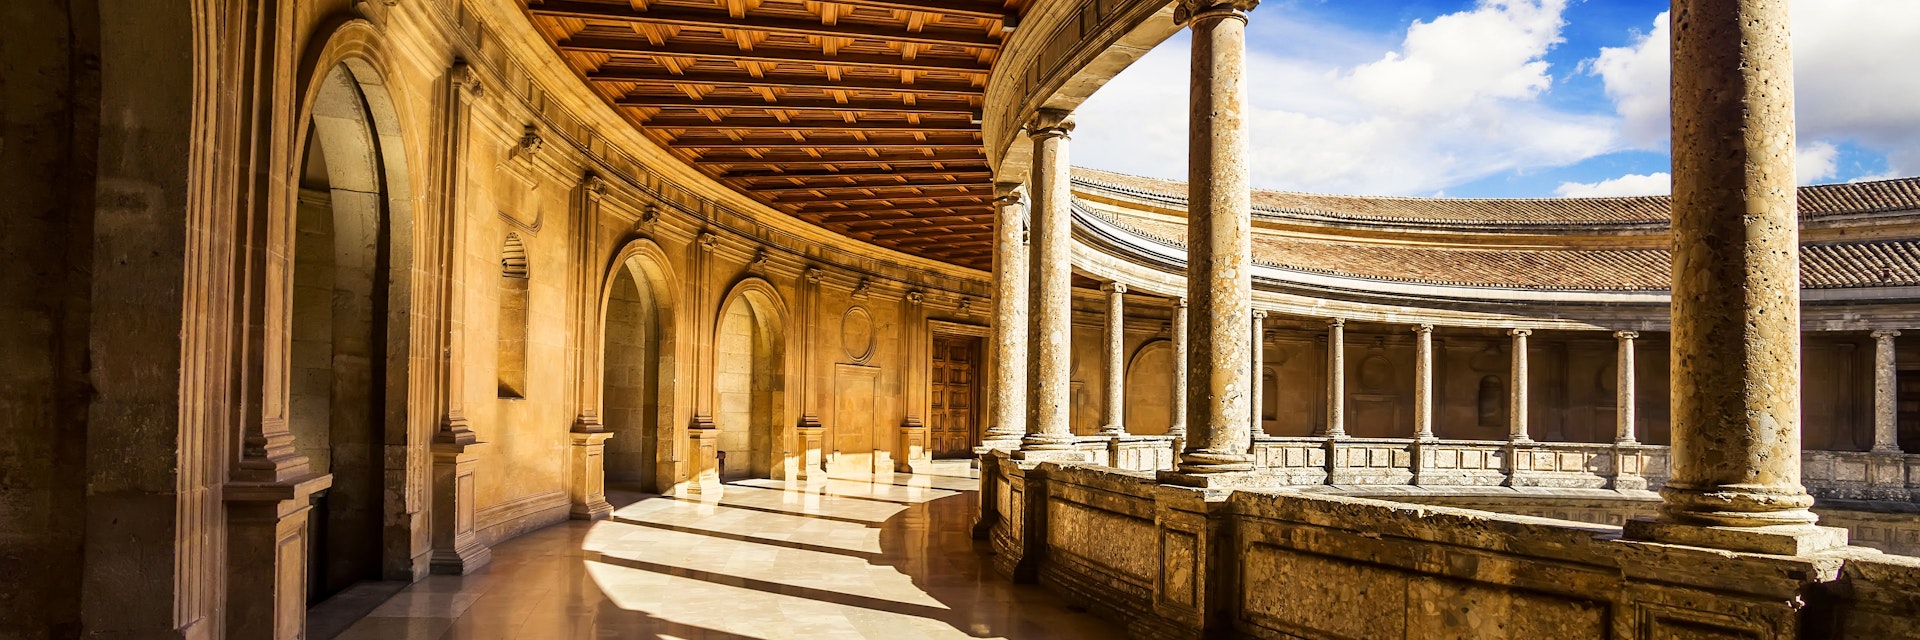 Courtyard of the Palacio de Carlos V in La Alhambra, Granada, Spain.